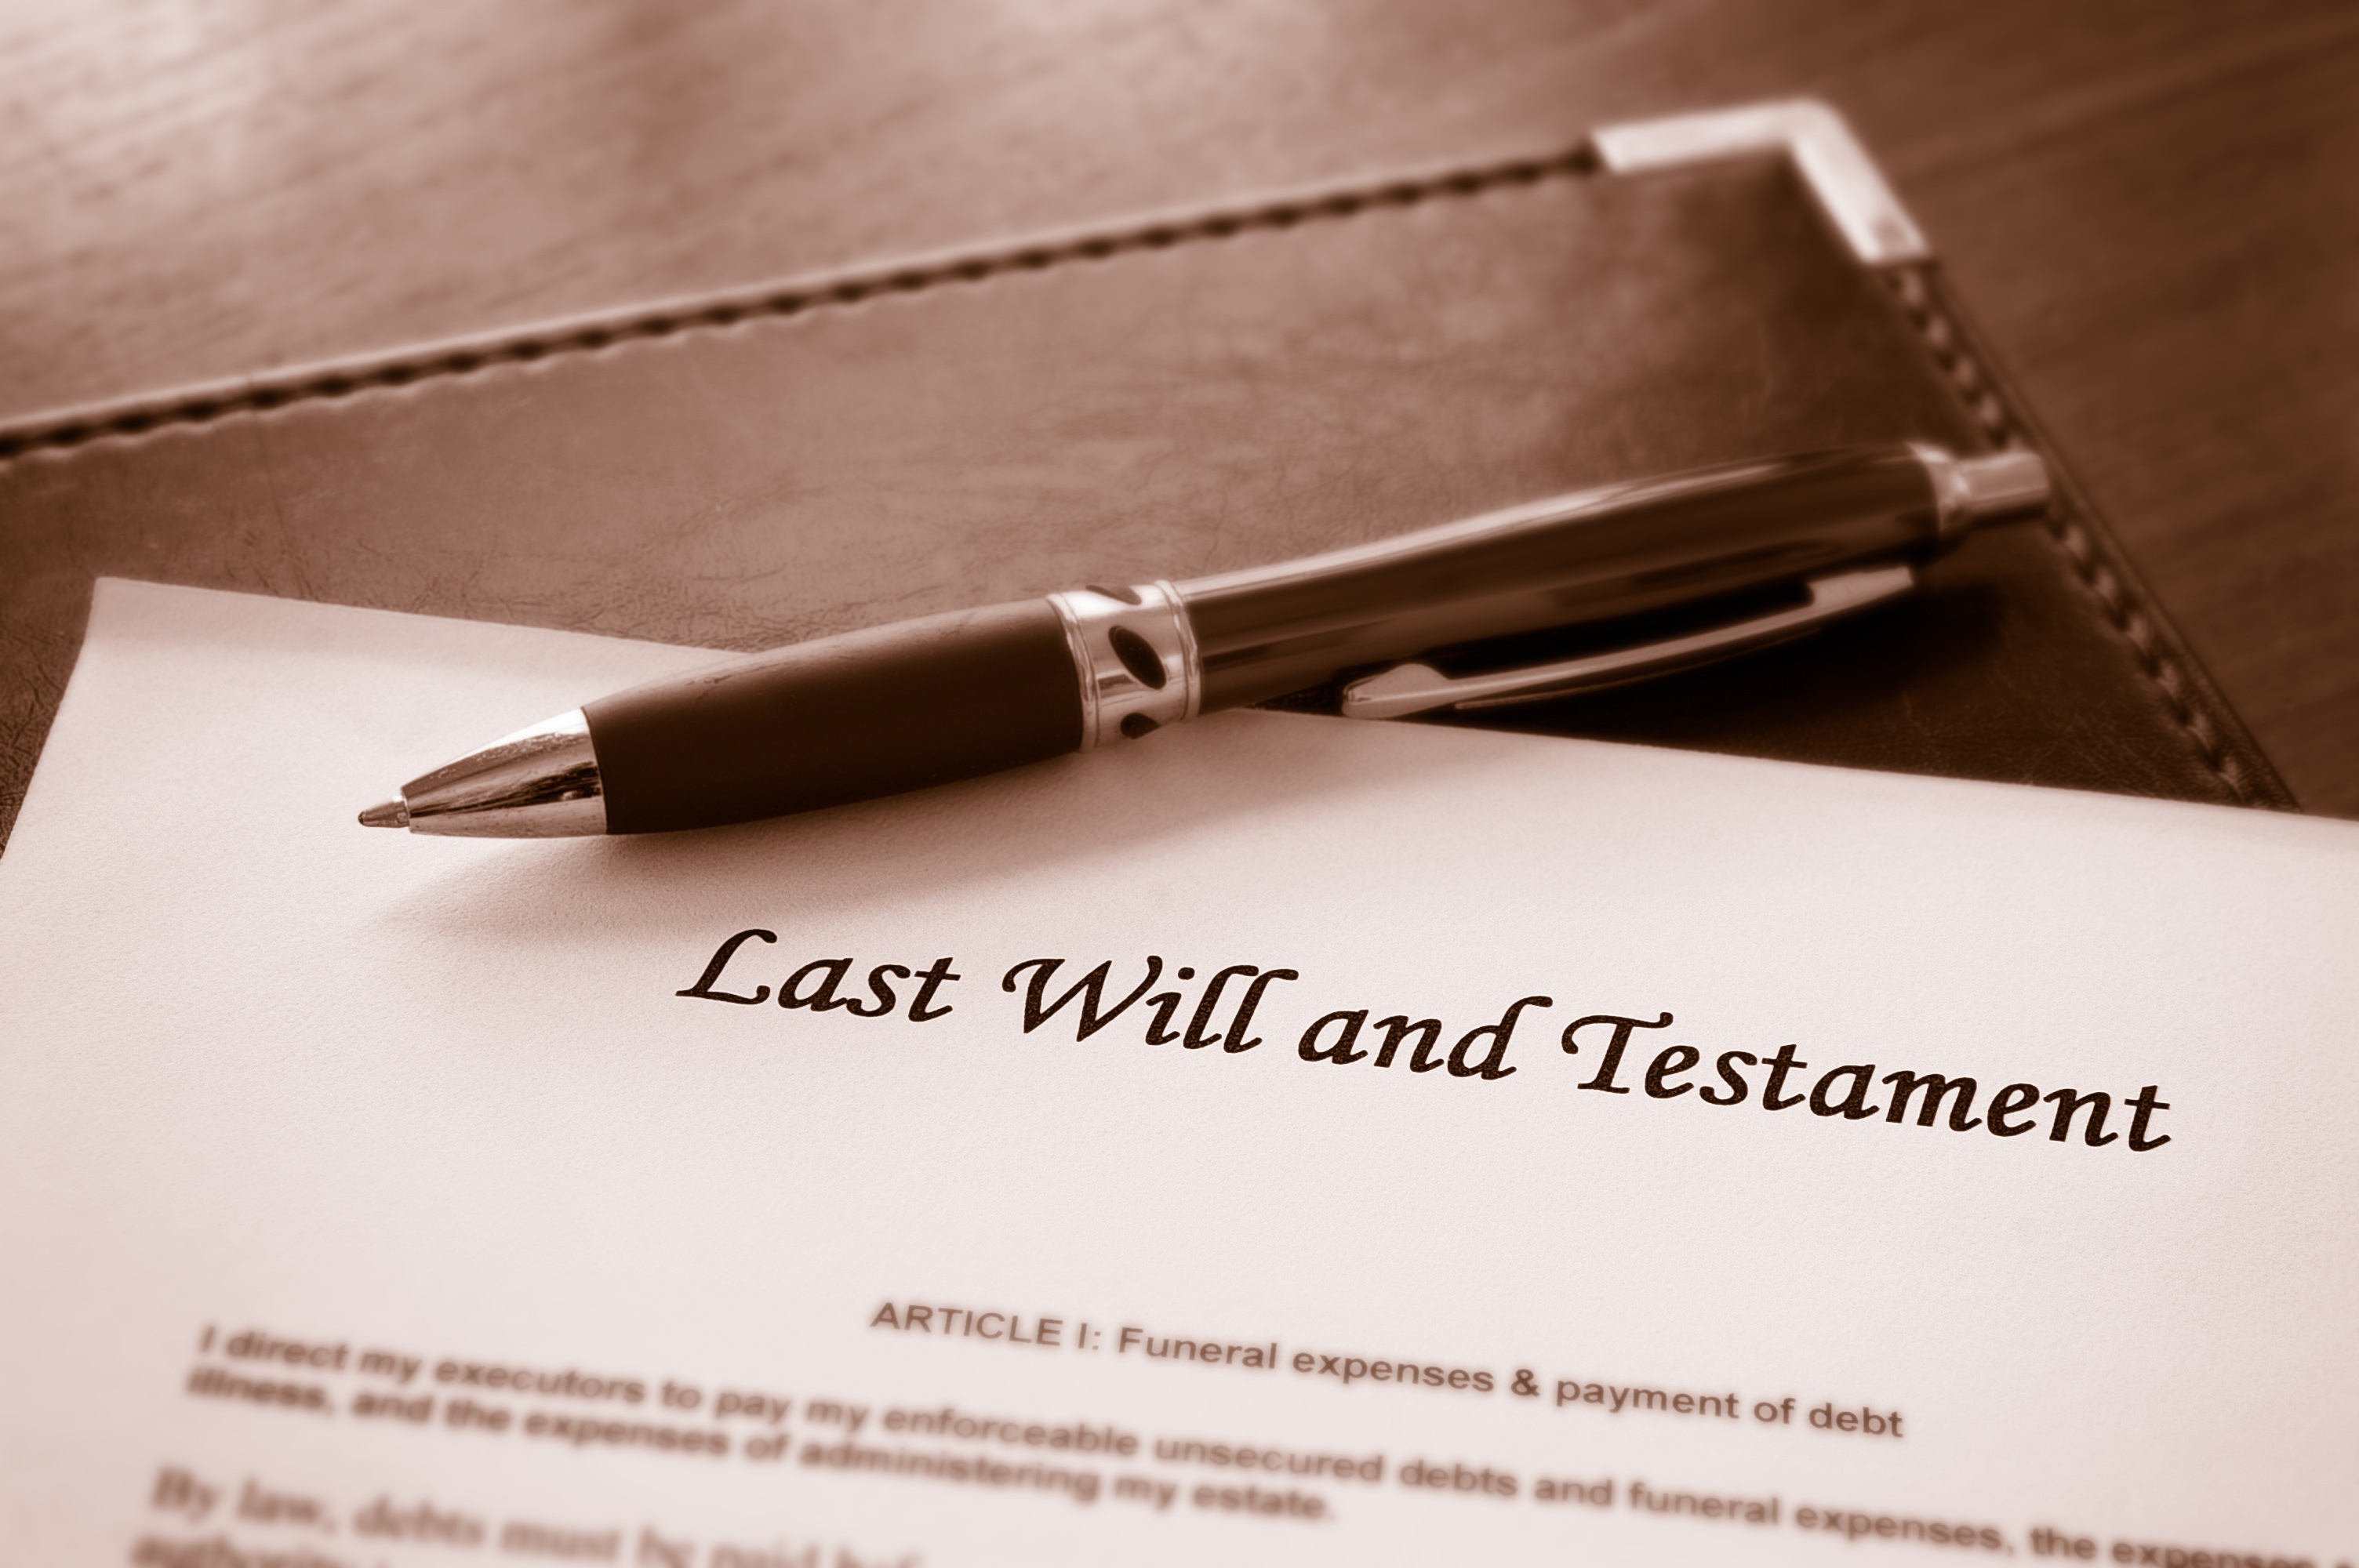 Un documento con el título "Última voluntad y testamento" | Fuente: Shutterstock